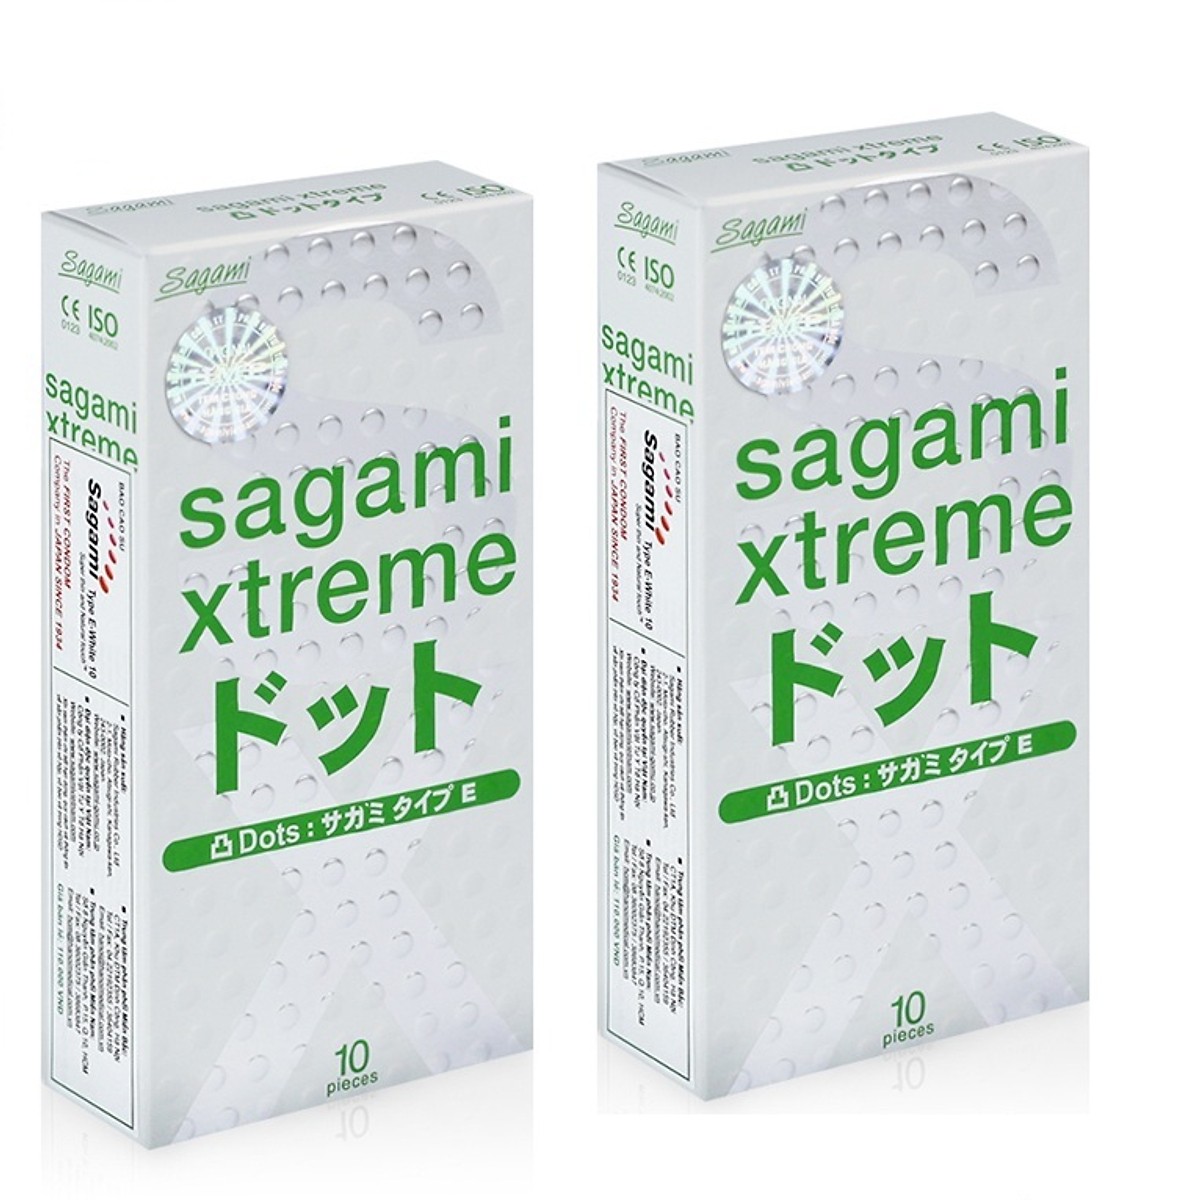 Sagami có độ dai và sức bền vượt trội so với các loại thông thường